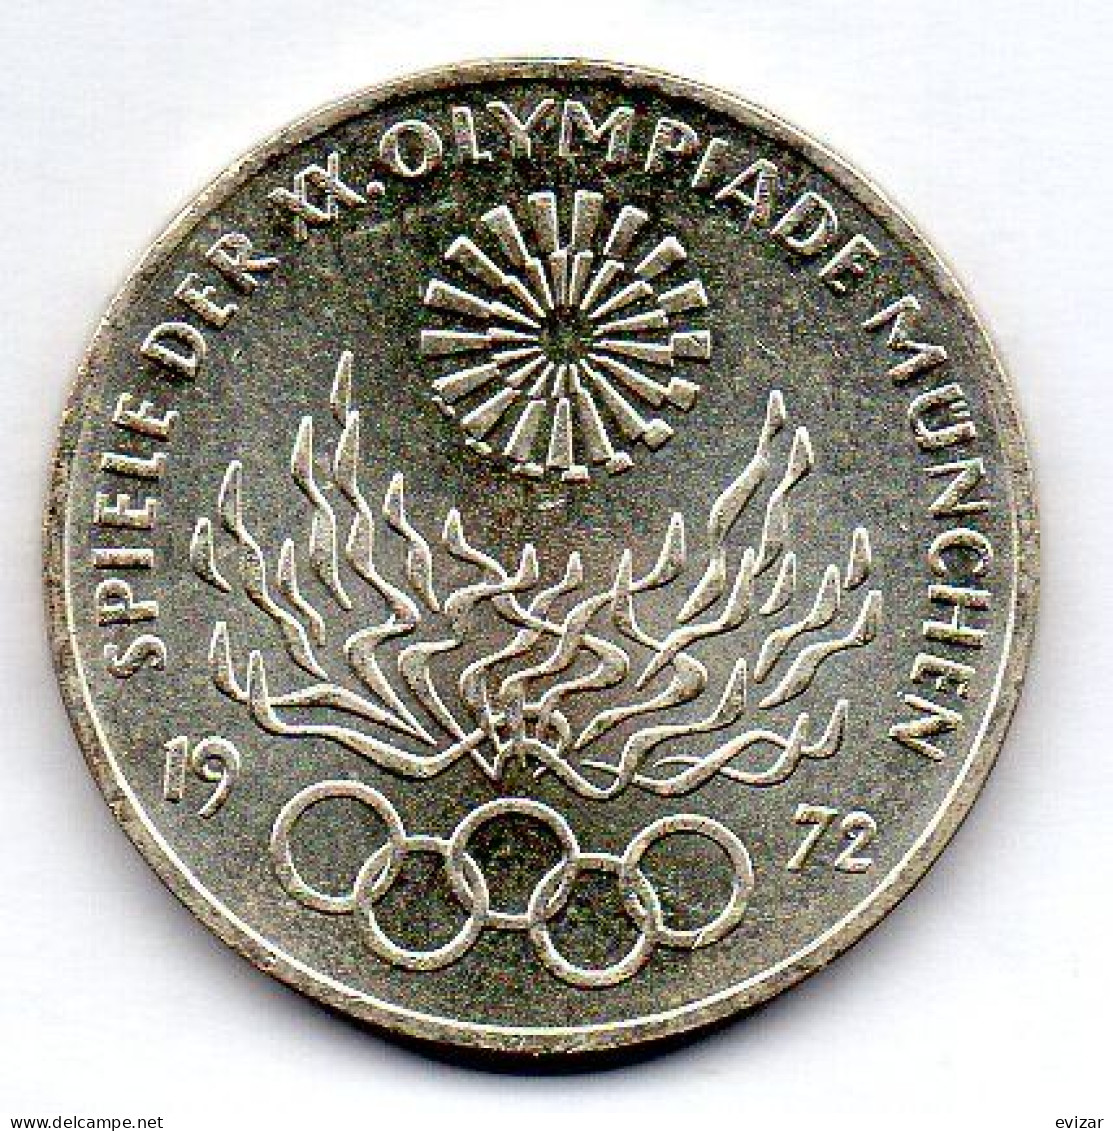 GERMANY - FEDERAL REPUBLIC, 10 Mark, Silver, Year 1972-G, KM # 135 - 10 Mark